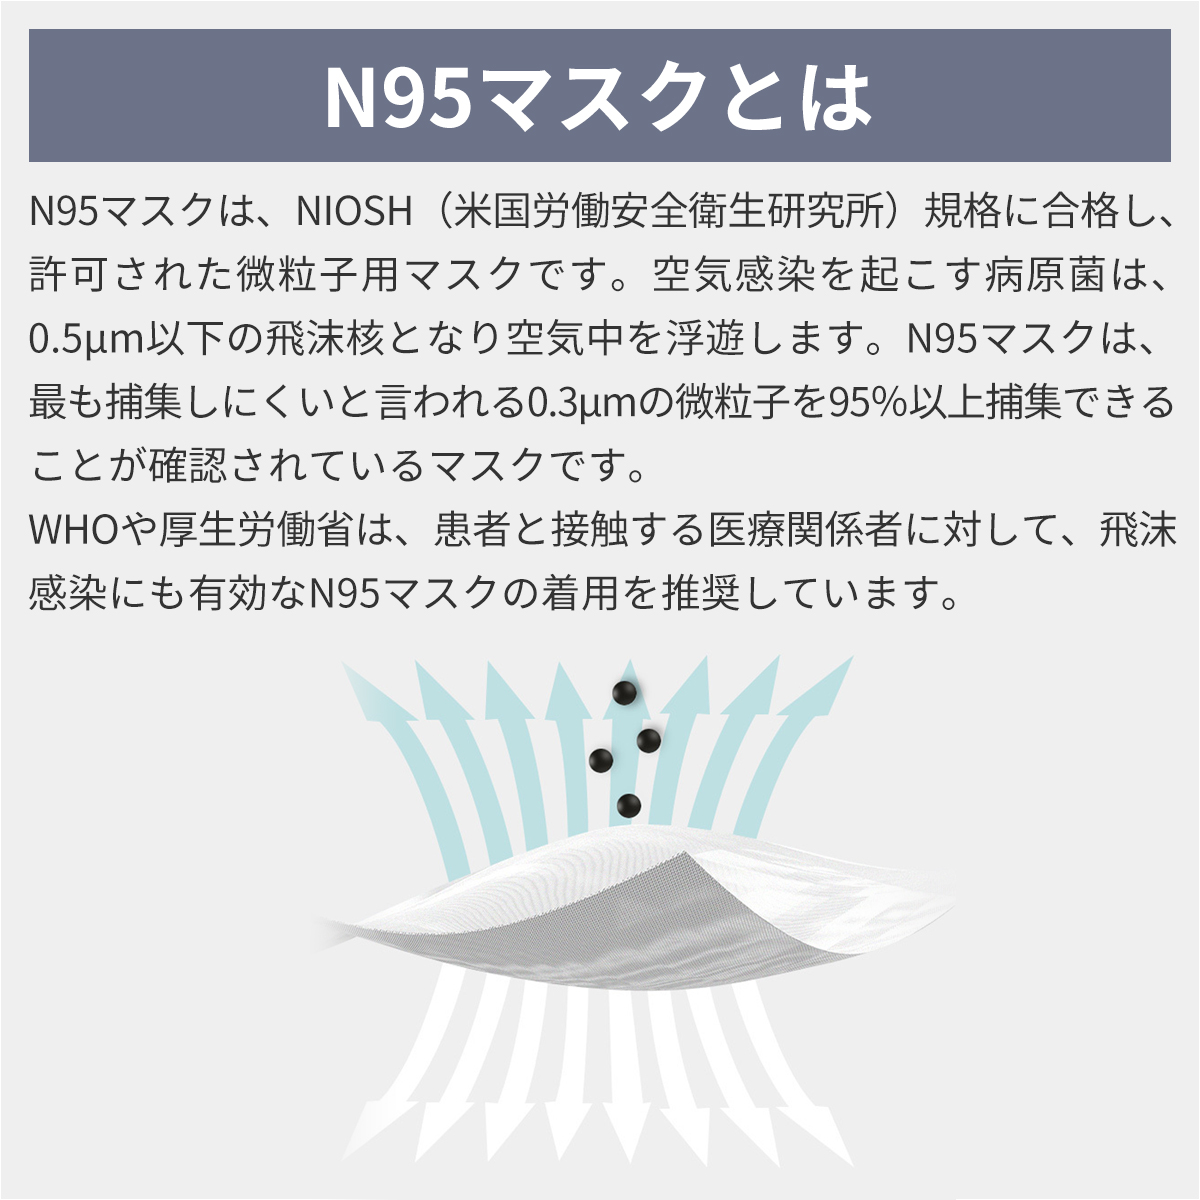  RABLISS N95 マスク カップ型 20枚入×5